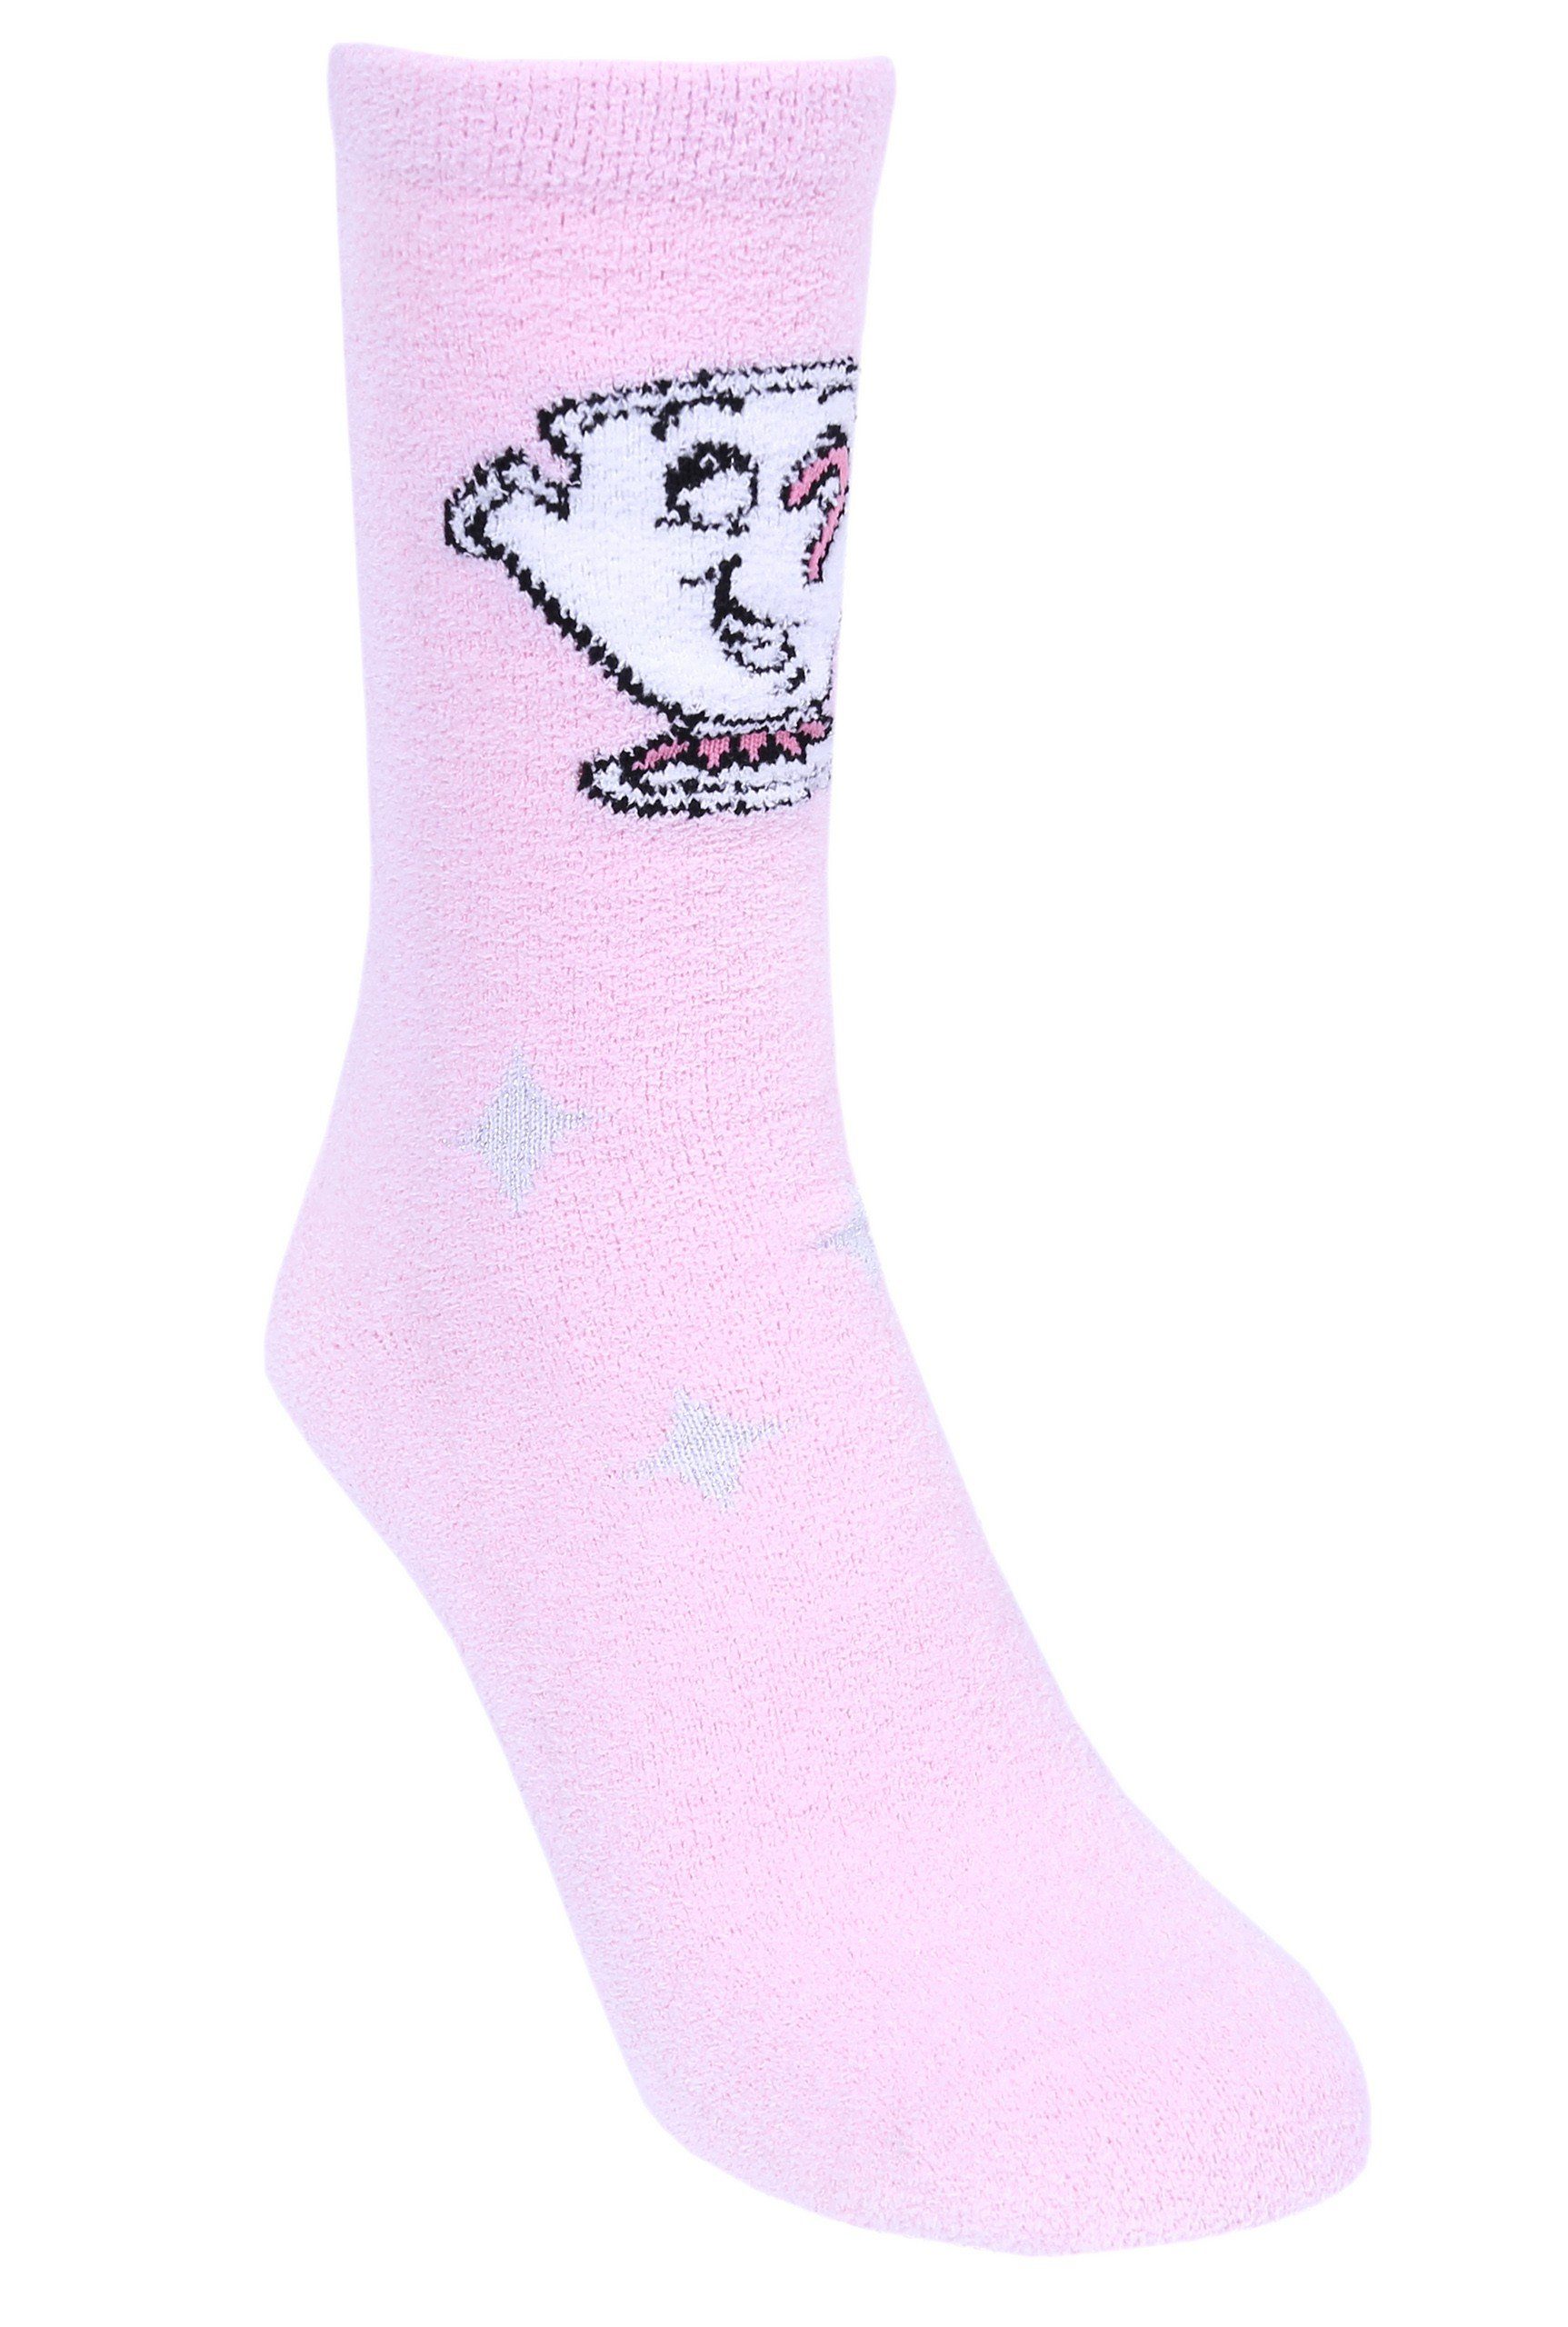 Schöne Socken Biest Sarcia.eu Tasse DISNEY und das Die Socken Pinke Tassilo